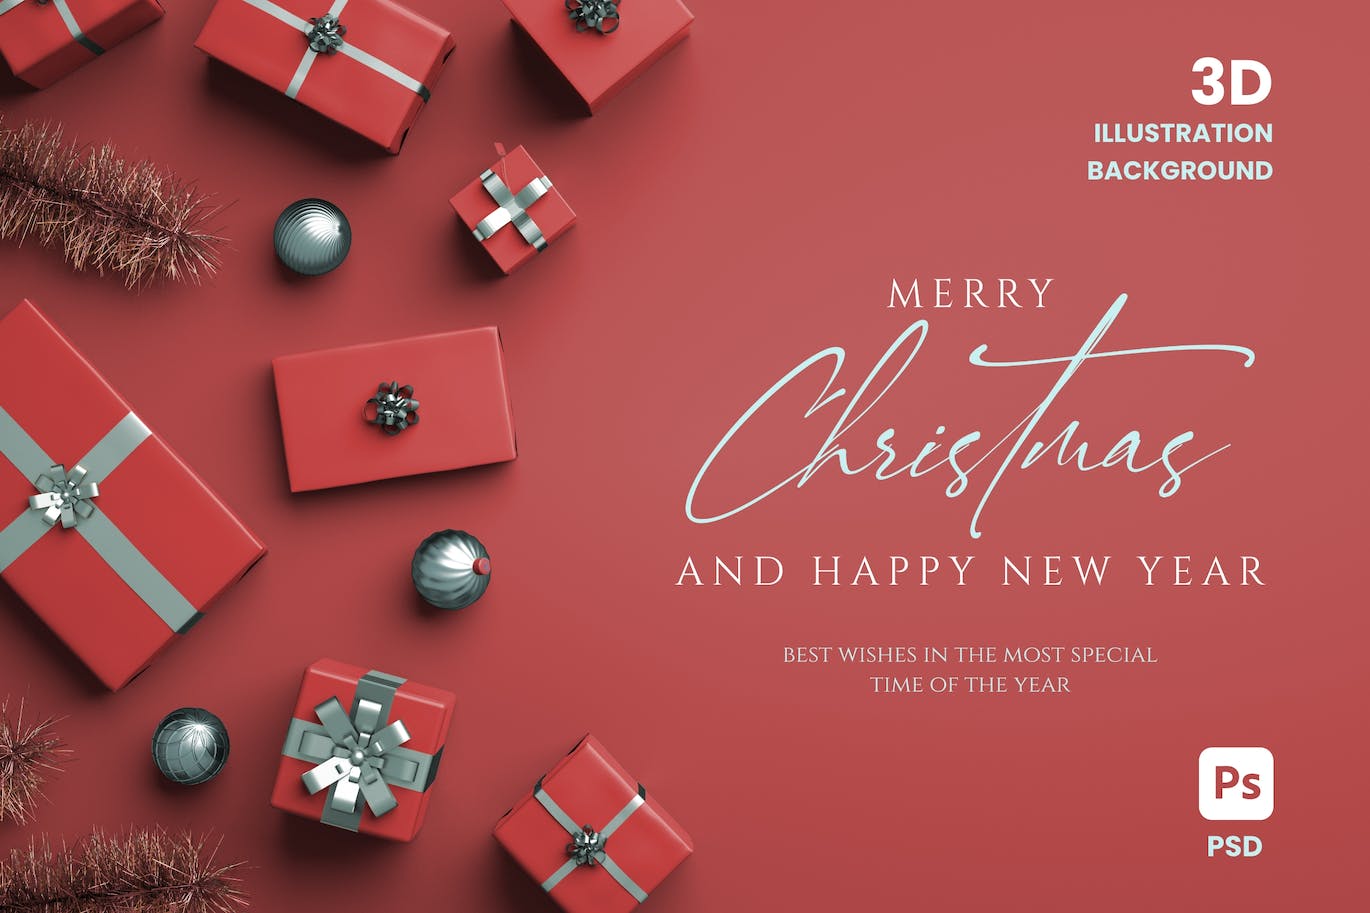 圣诞快乐3D插图背景和礼物 (PSD,JPG)